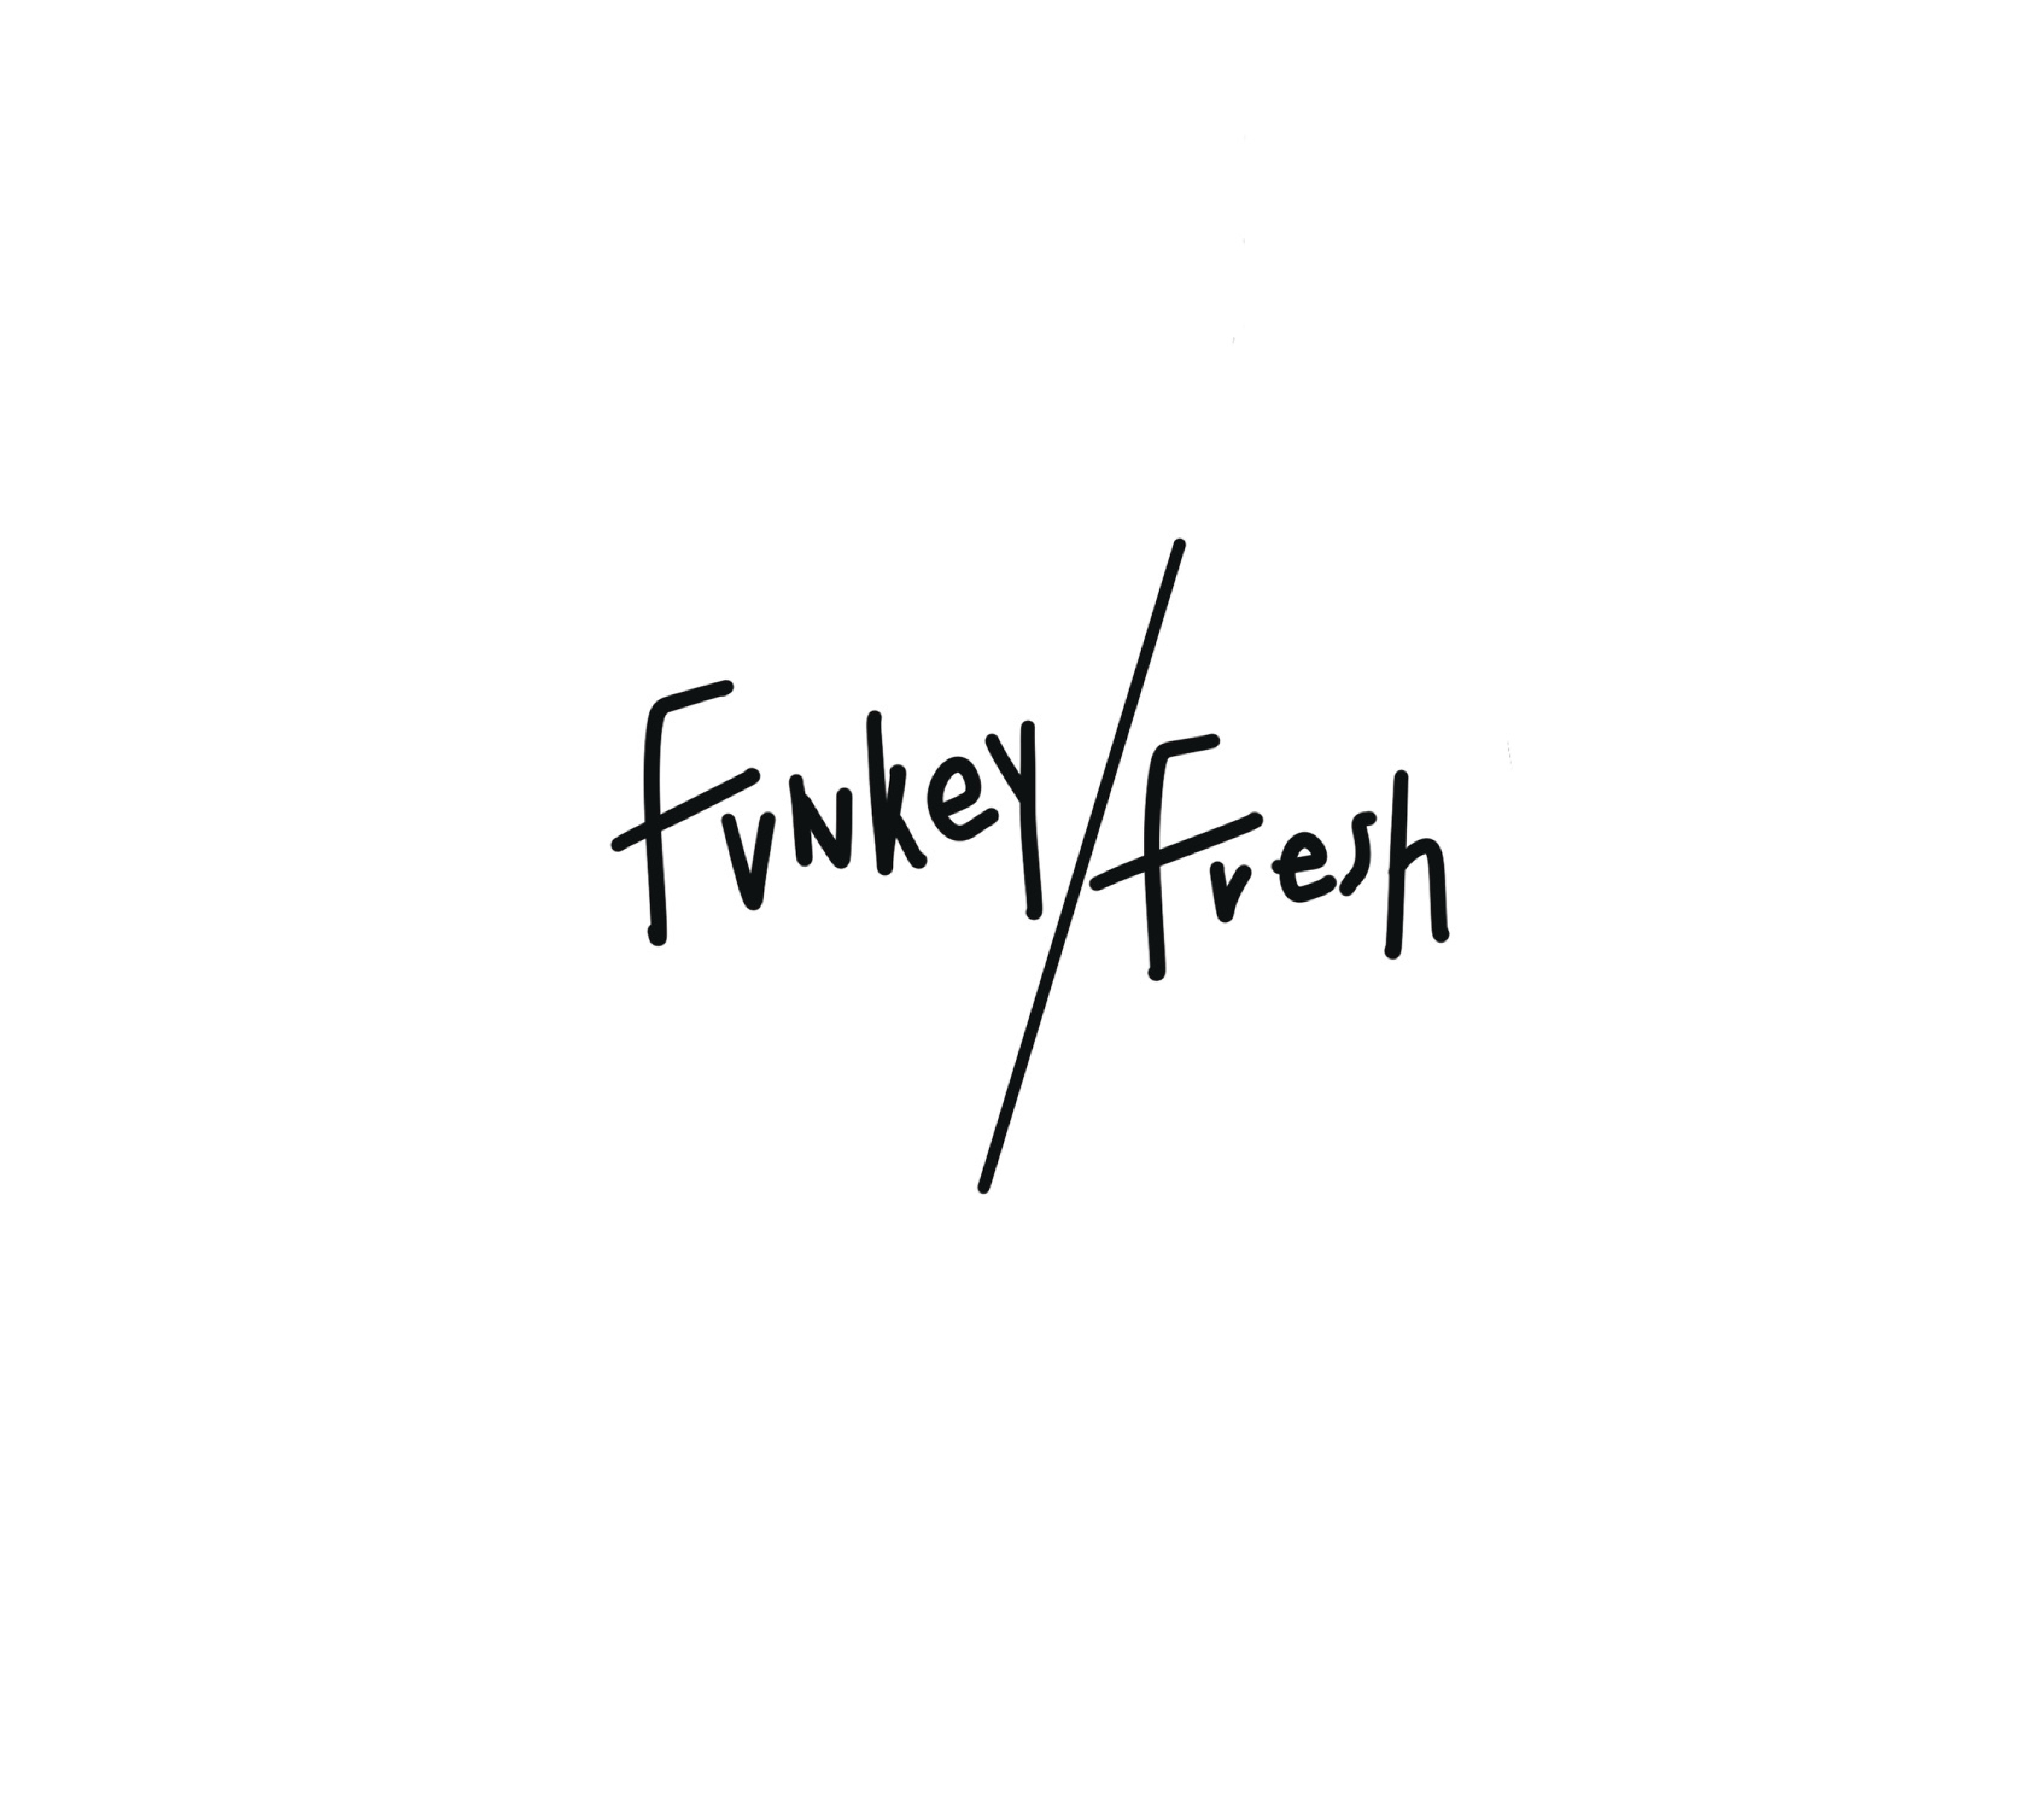 FUNKEY/FRESH